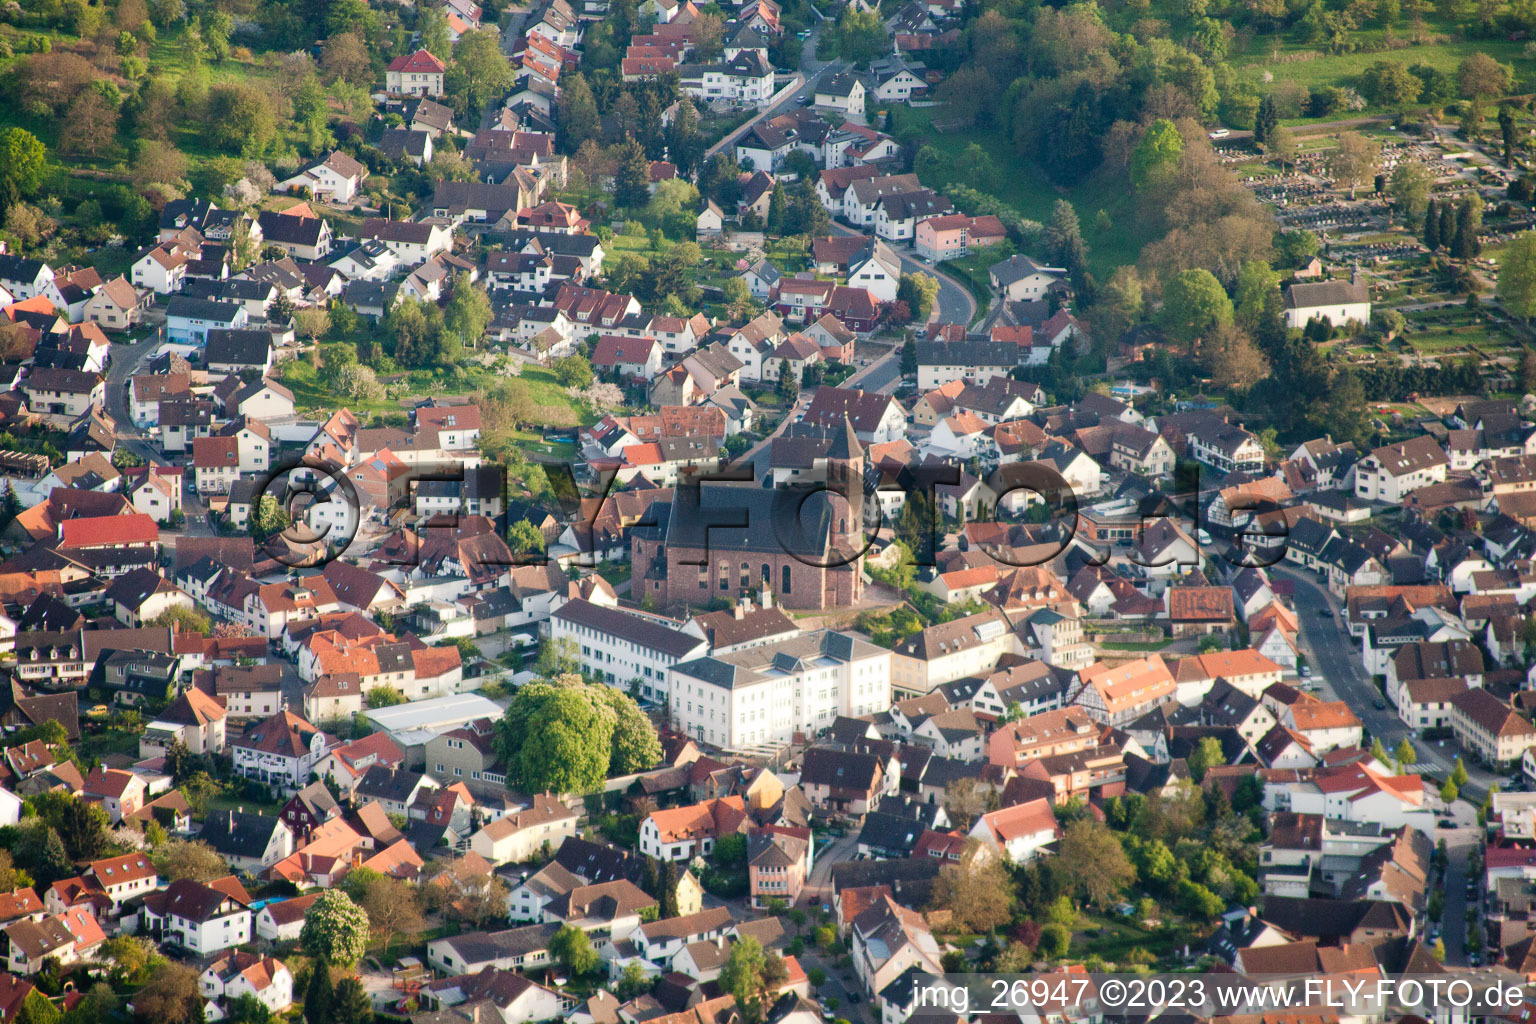 Luftbild von St. Cyriak in Malsch im Bundesland Baden-Württemberg, Deutschland